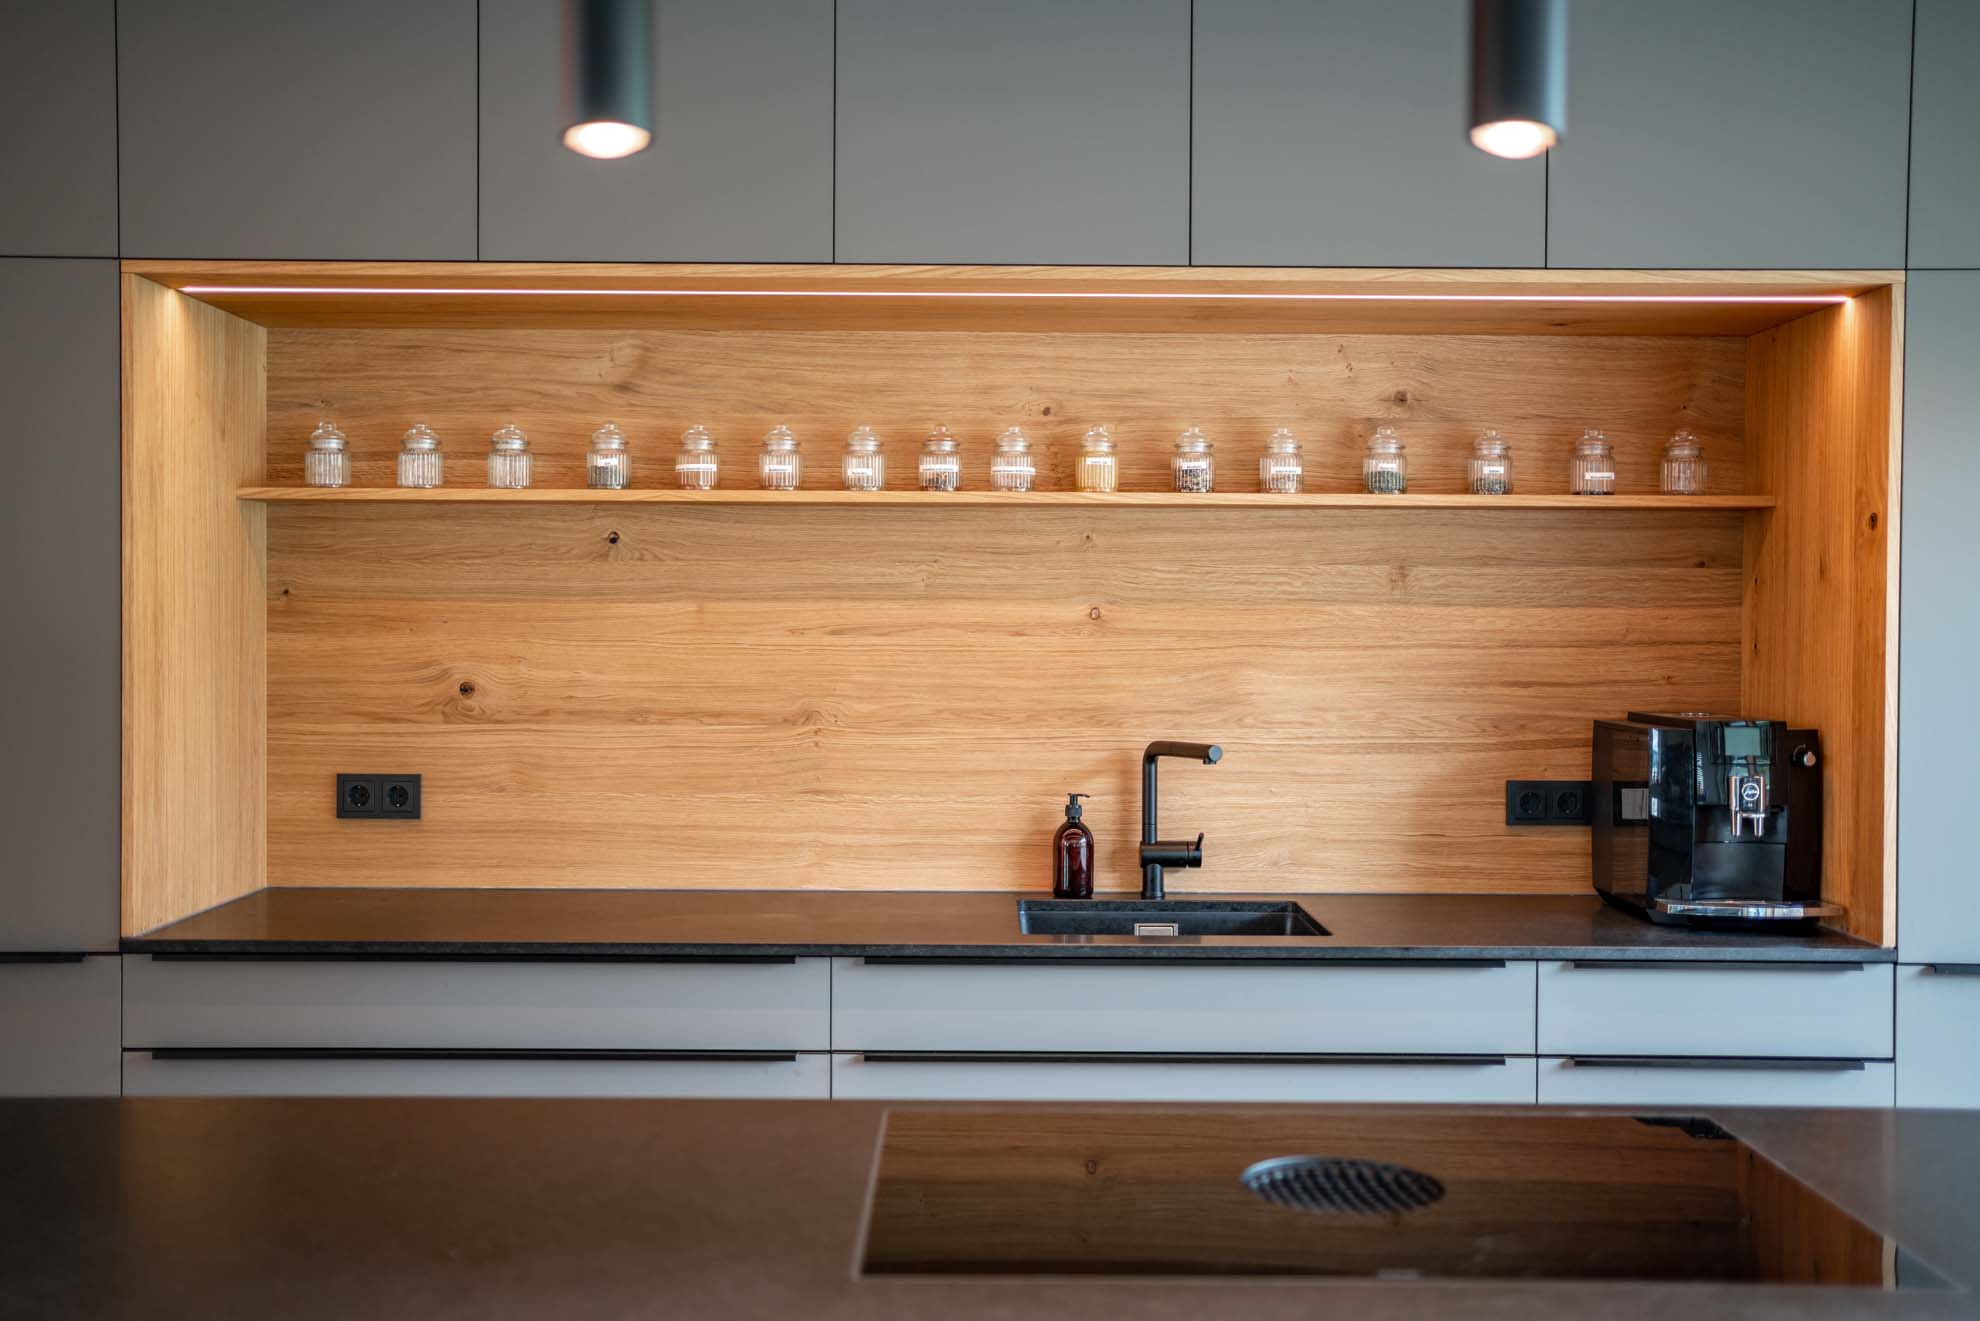 Interieurfotografie einer schön designten Küche mit Kochinsel und Holzelementen